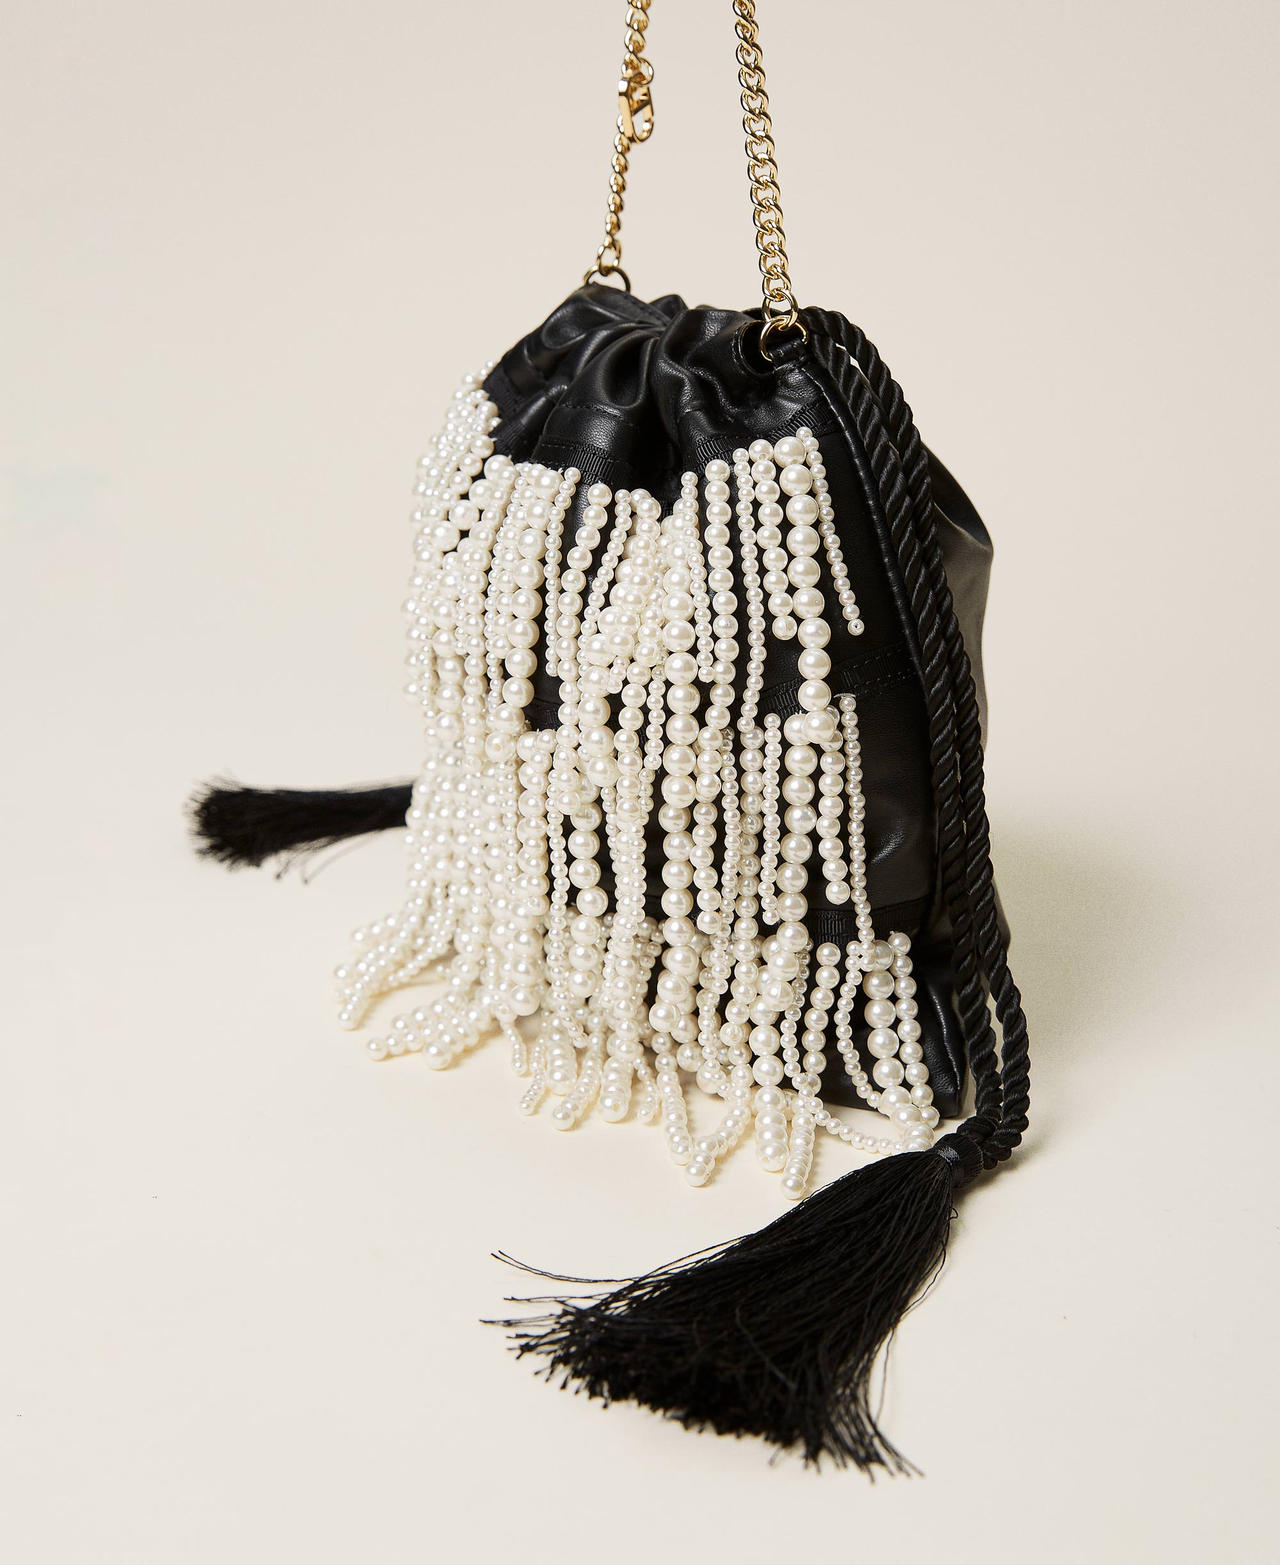 Sac modèle sacchetto avec franges de perles Noir Femme 212TB7300-02